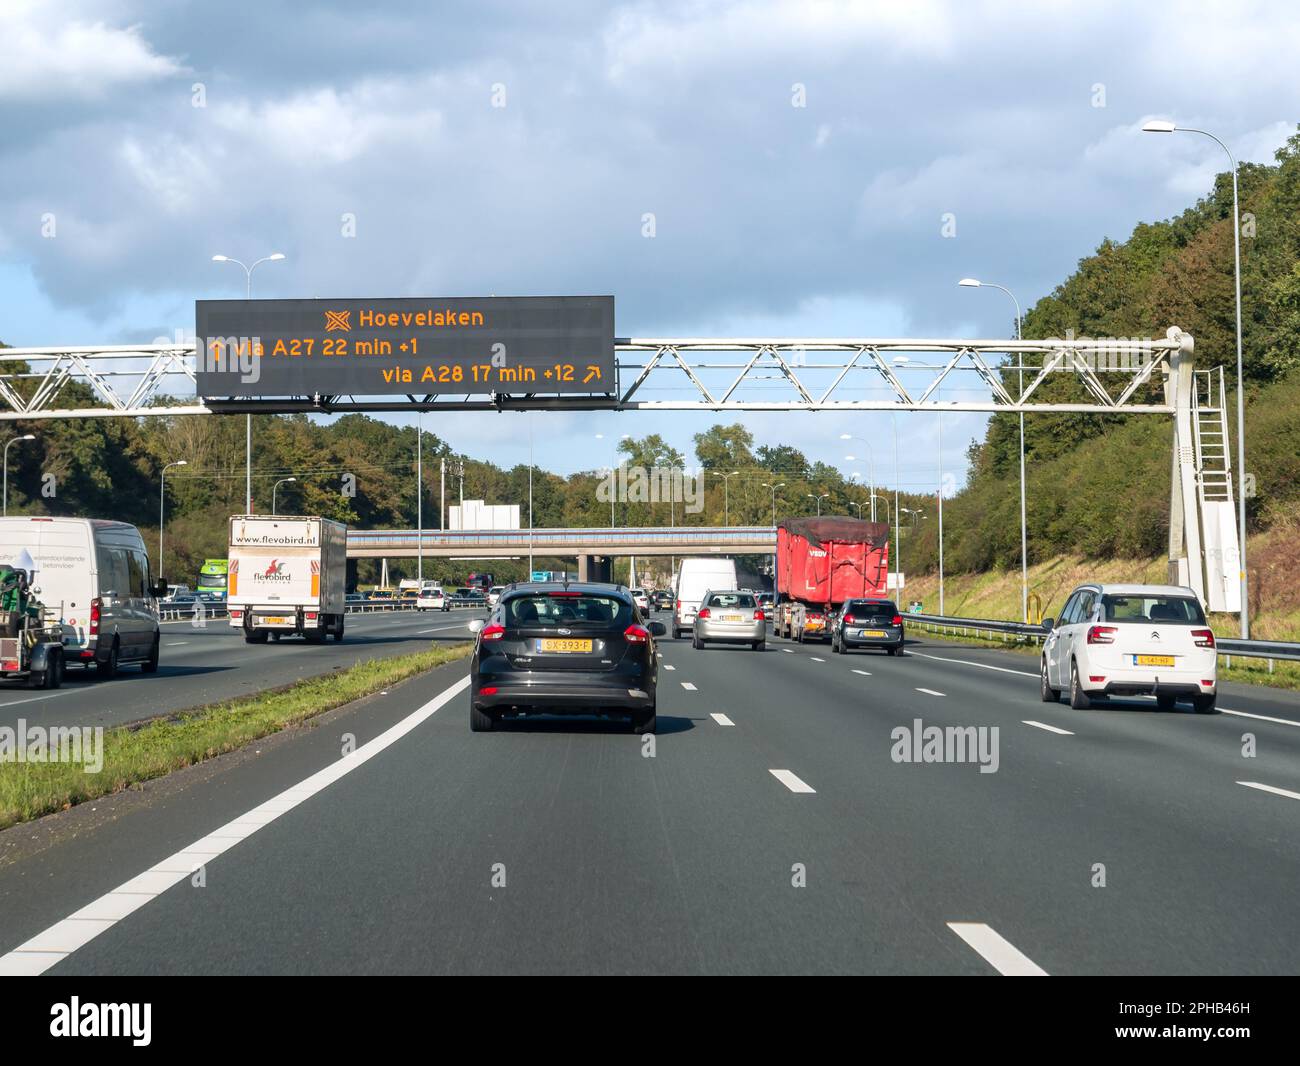 Traffico e gantry che visualizza informazioni elettroniche sui tempi di viaggio, autostrada A27 tra Utrecht e Hilversum, Paesi Bassi Foto Stock